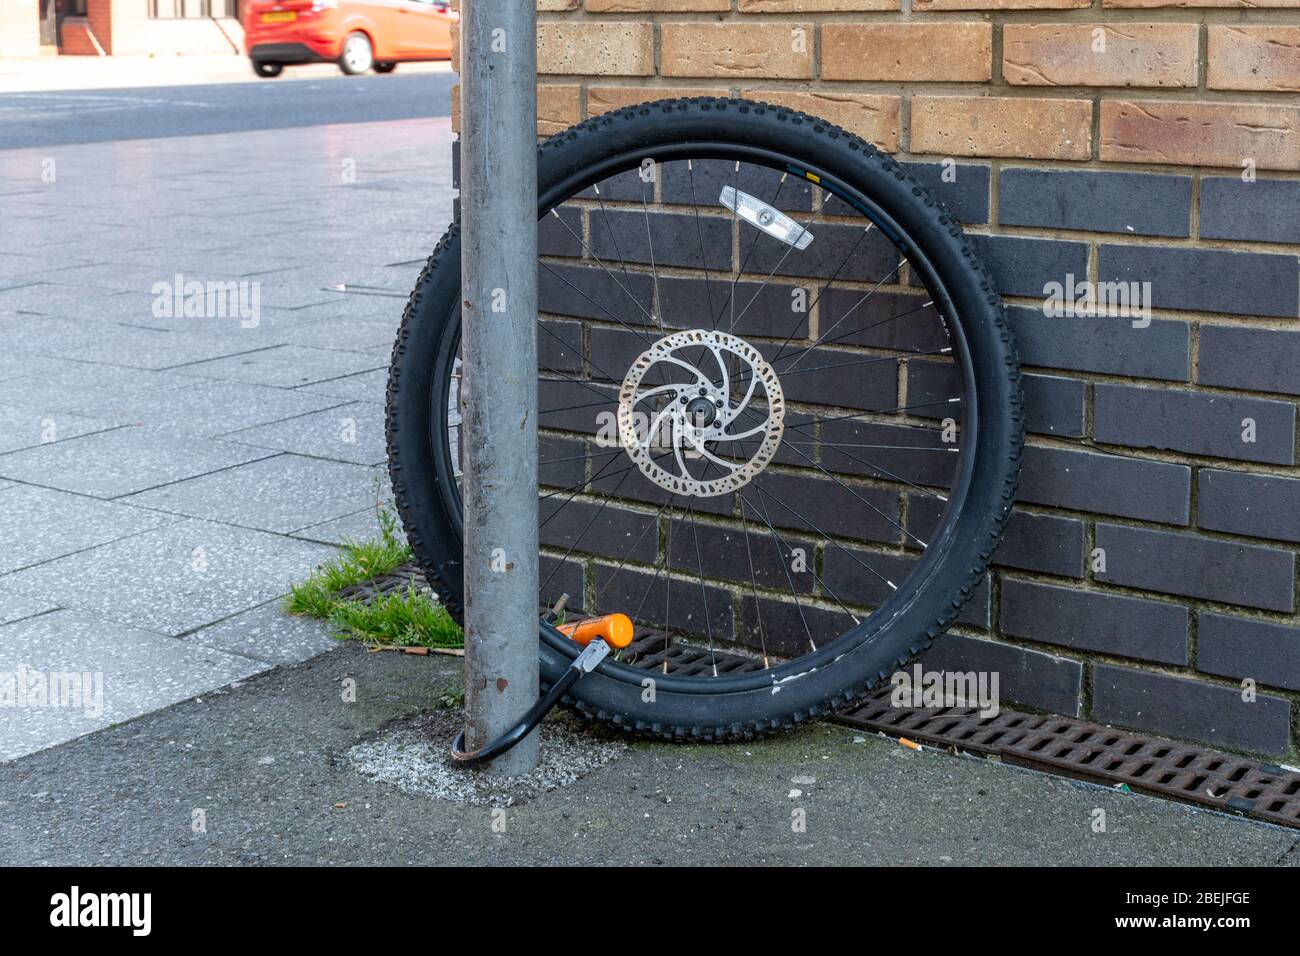 Une seule roue de vélo est chaînée à un poteau après le reste de la moto a été volée. Concept de vol de vélos ou de crime. Banque D'Images